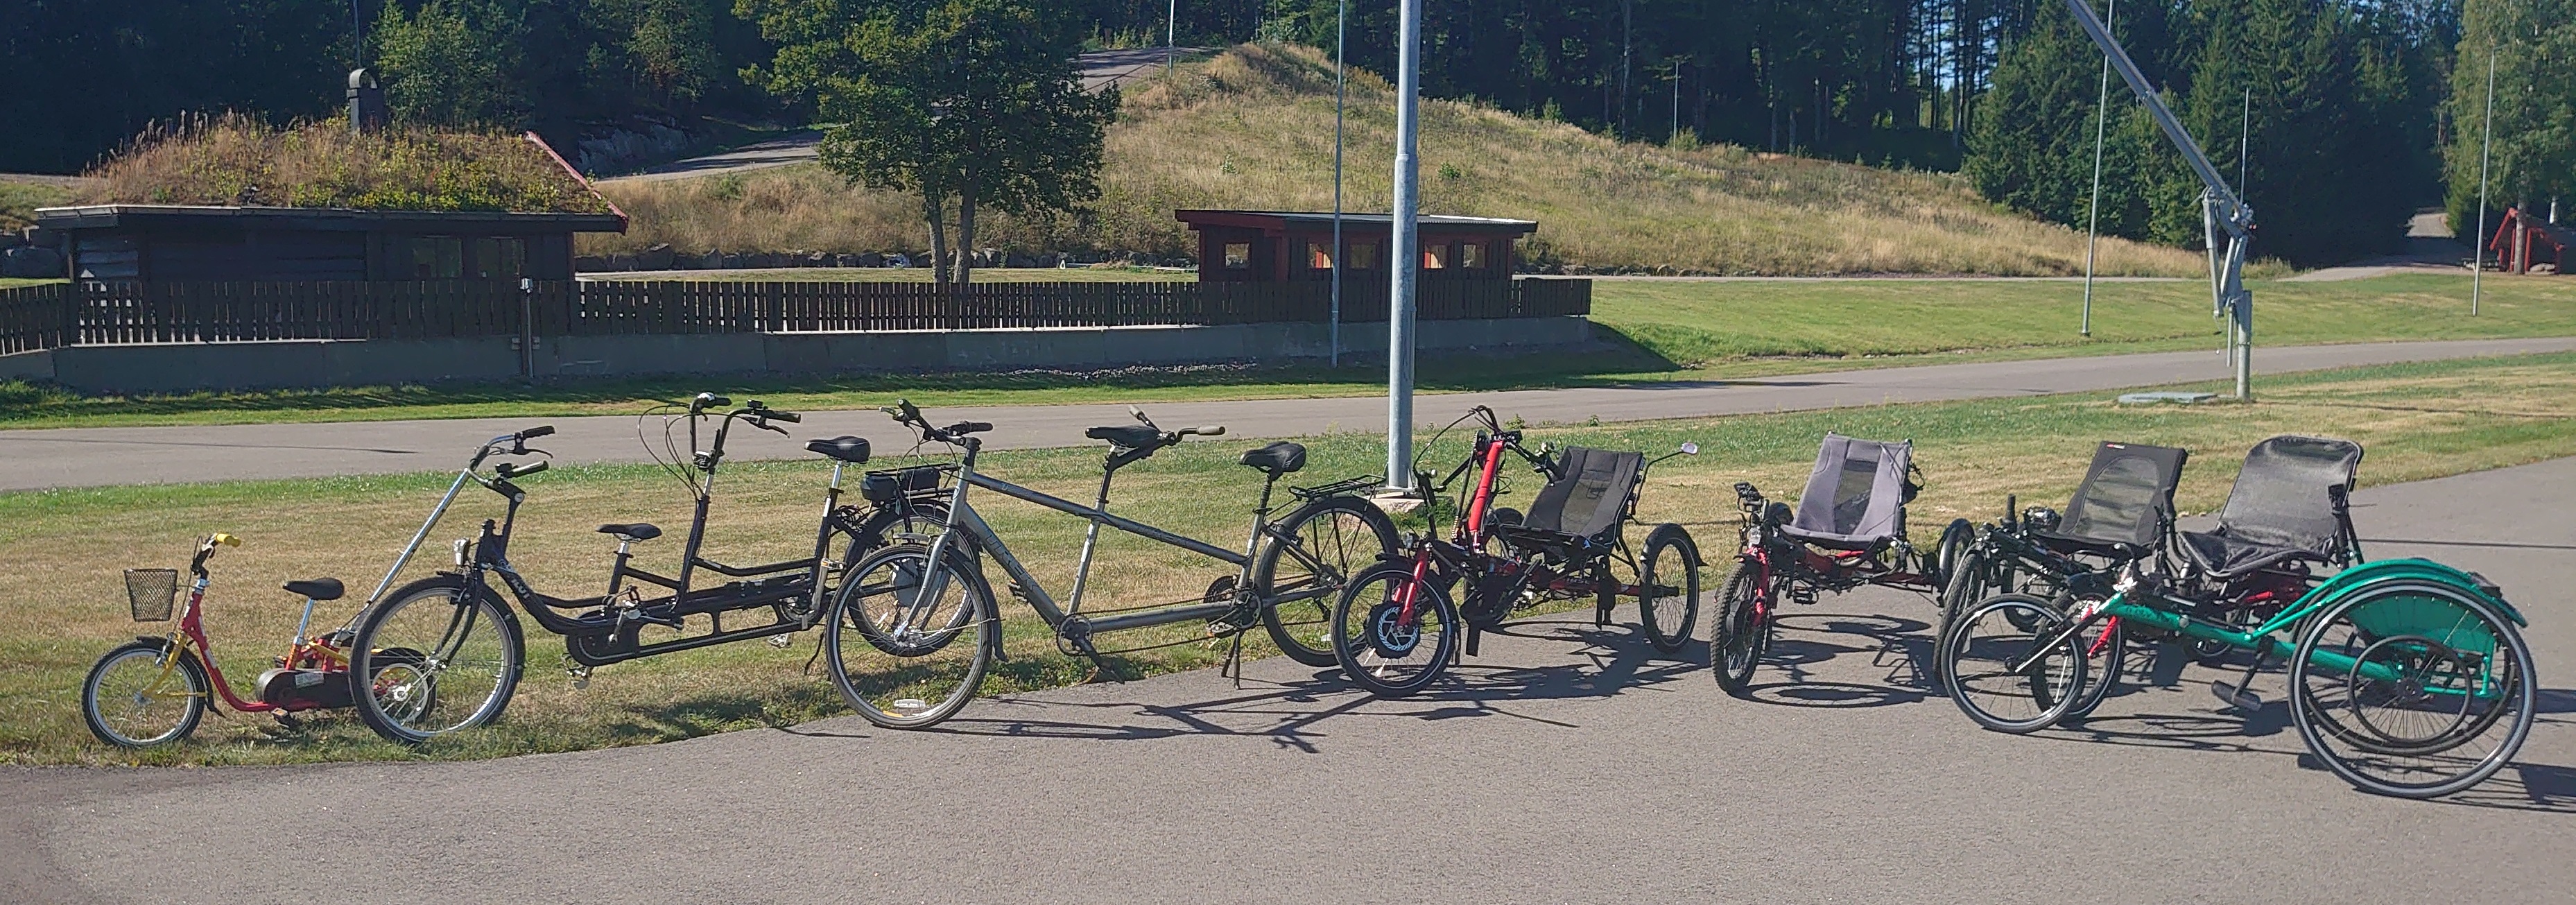 Noen av syklene og andre aktivitetshjelpemidler som er til utlån i Storås